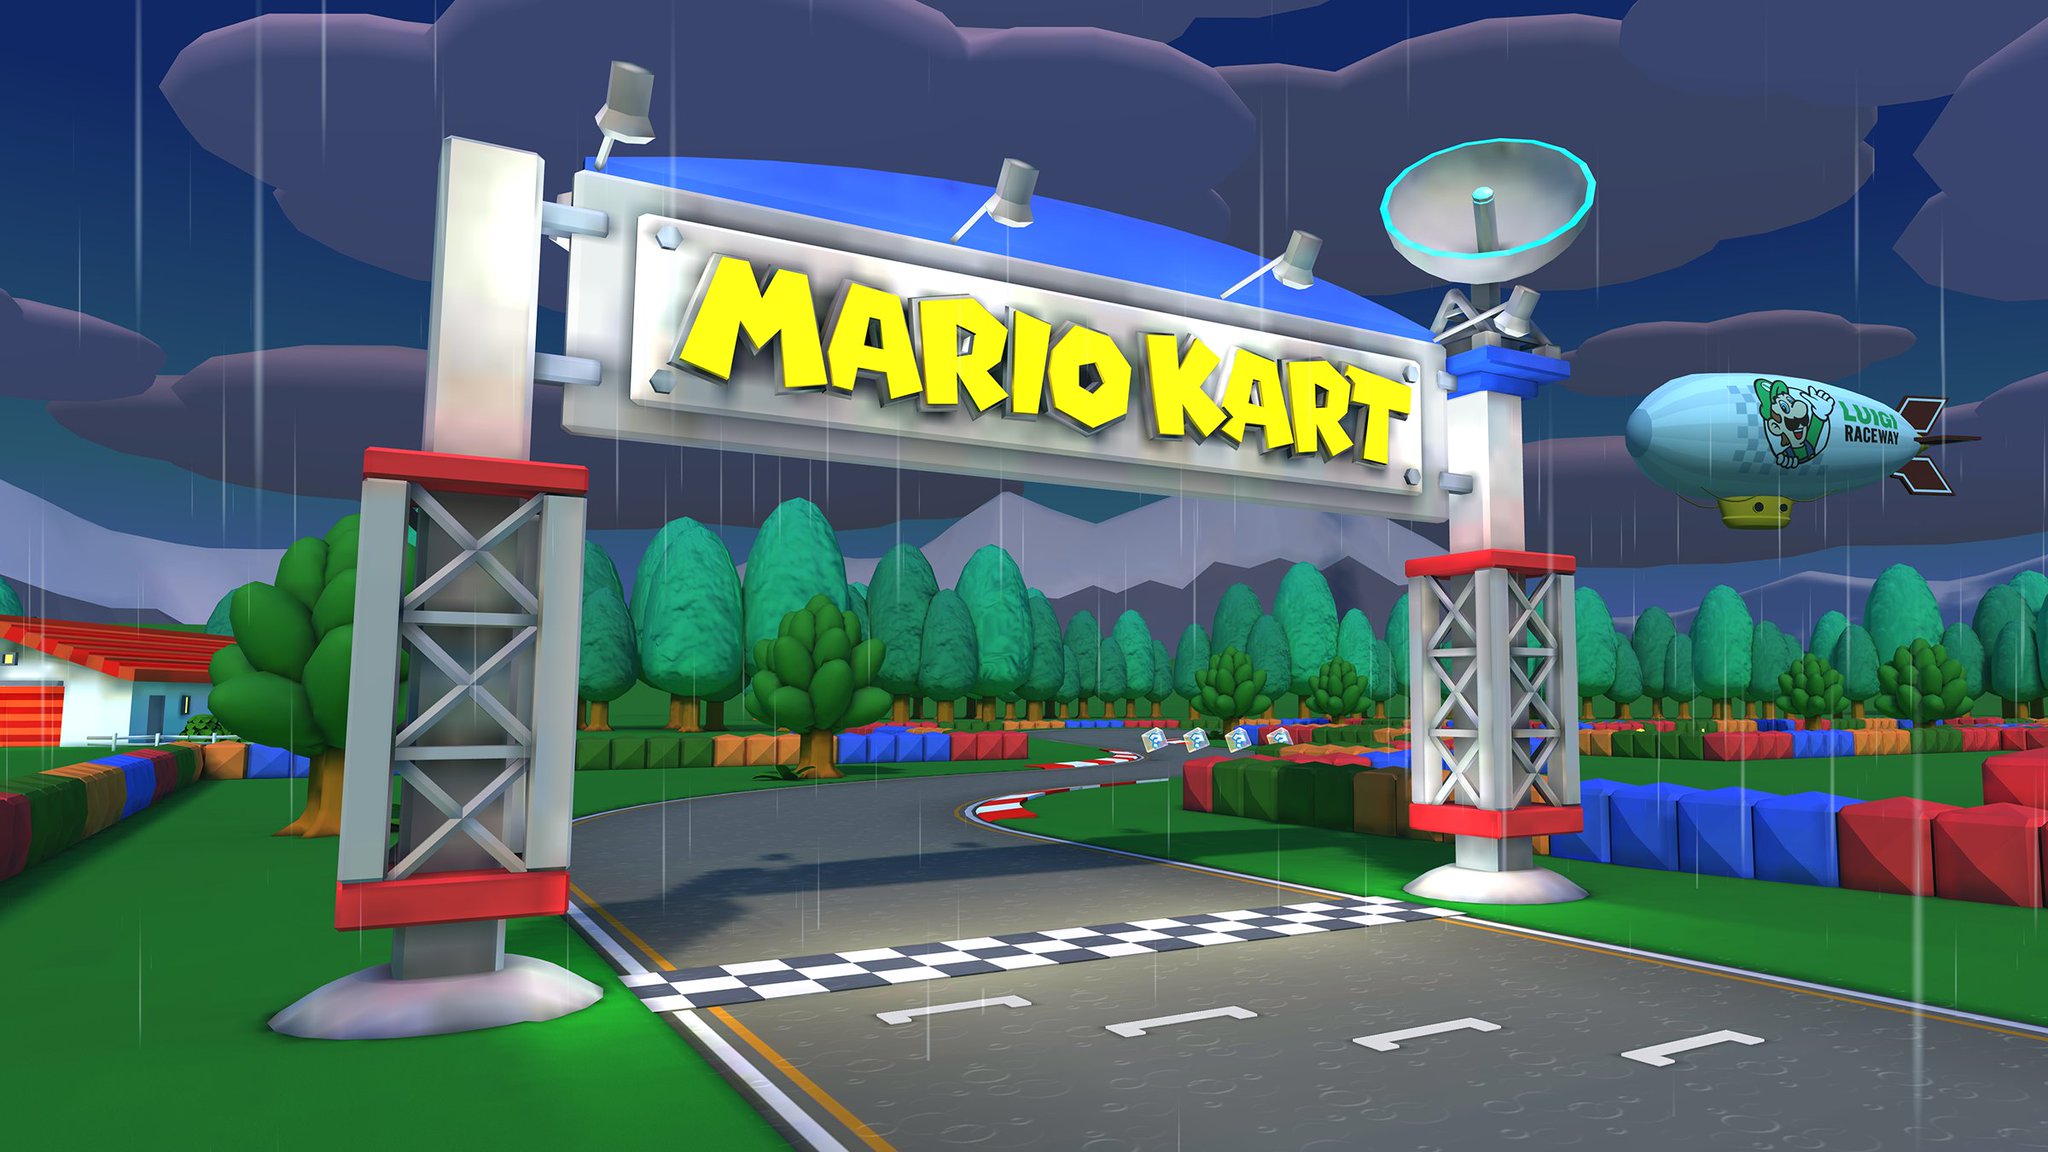 Mario Kart Tour - Mario vs. Luigi Tour Team Mario 